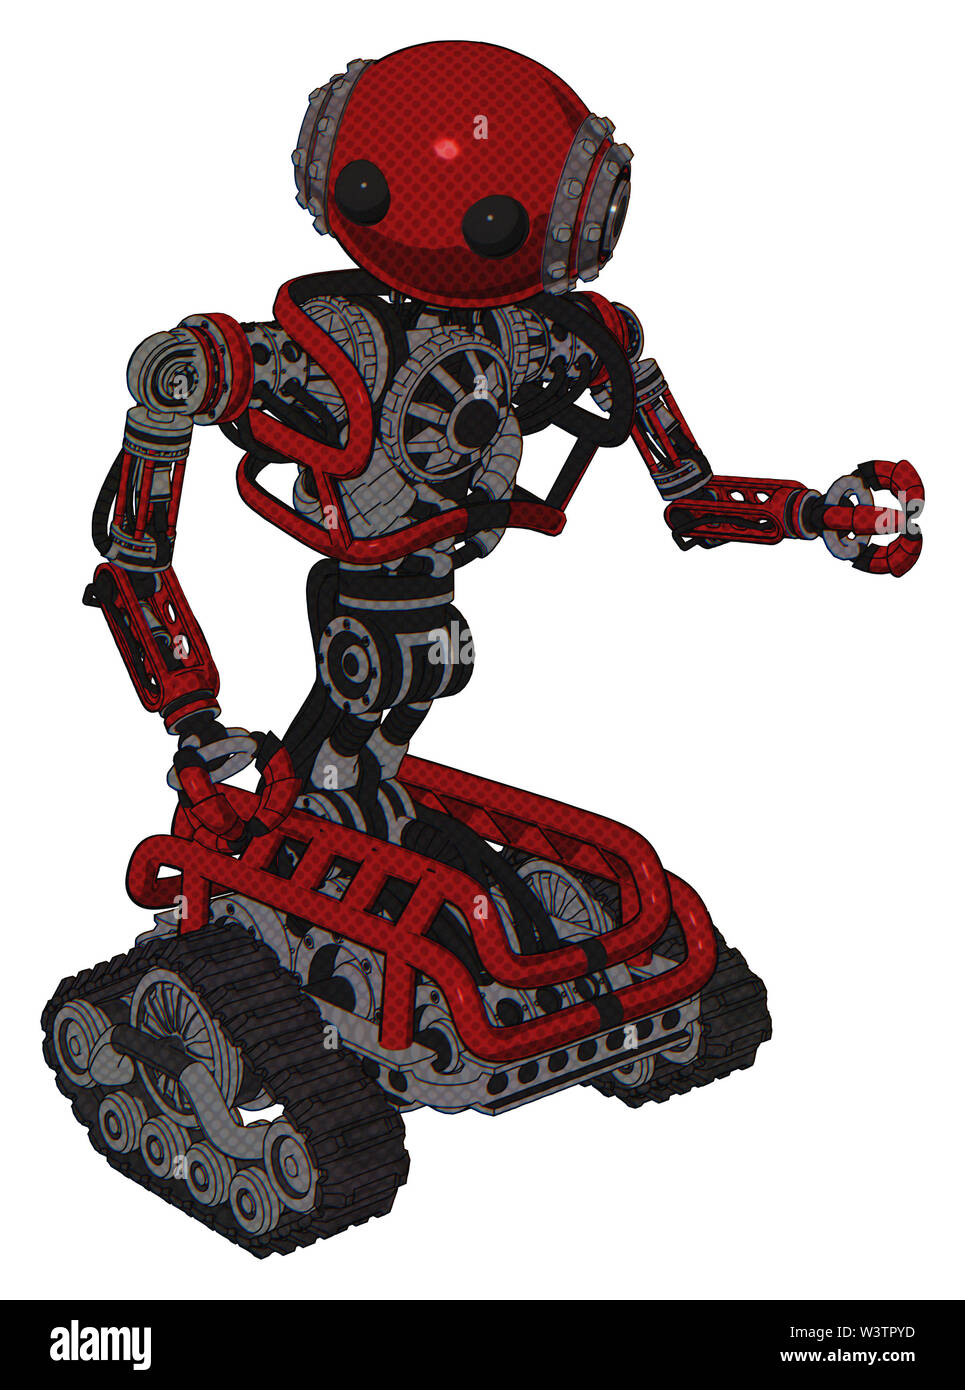 Cyborg Elemente enthalten: Oval breiter Kopf, beady schwarze Augen, Steampunk Bügeleisen Bands mit Schrauben, schwere obere Brust, keine Brust plating, Tank Titel. Stockfoto